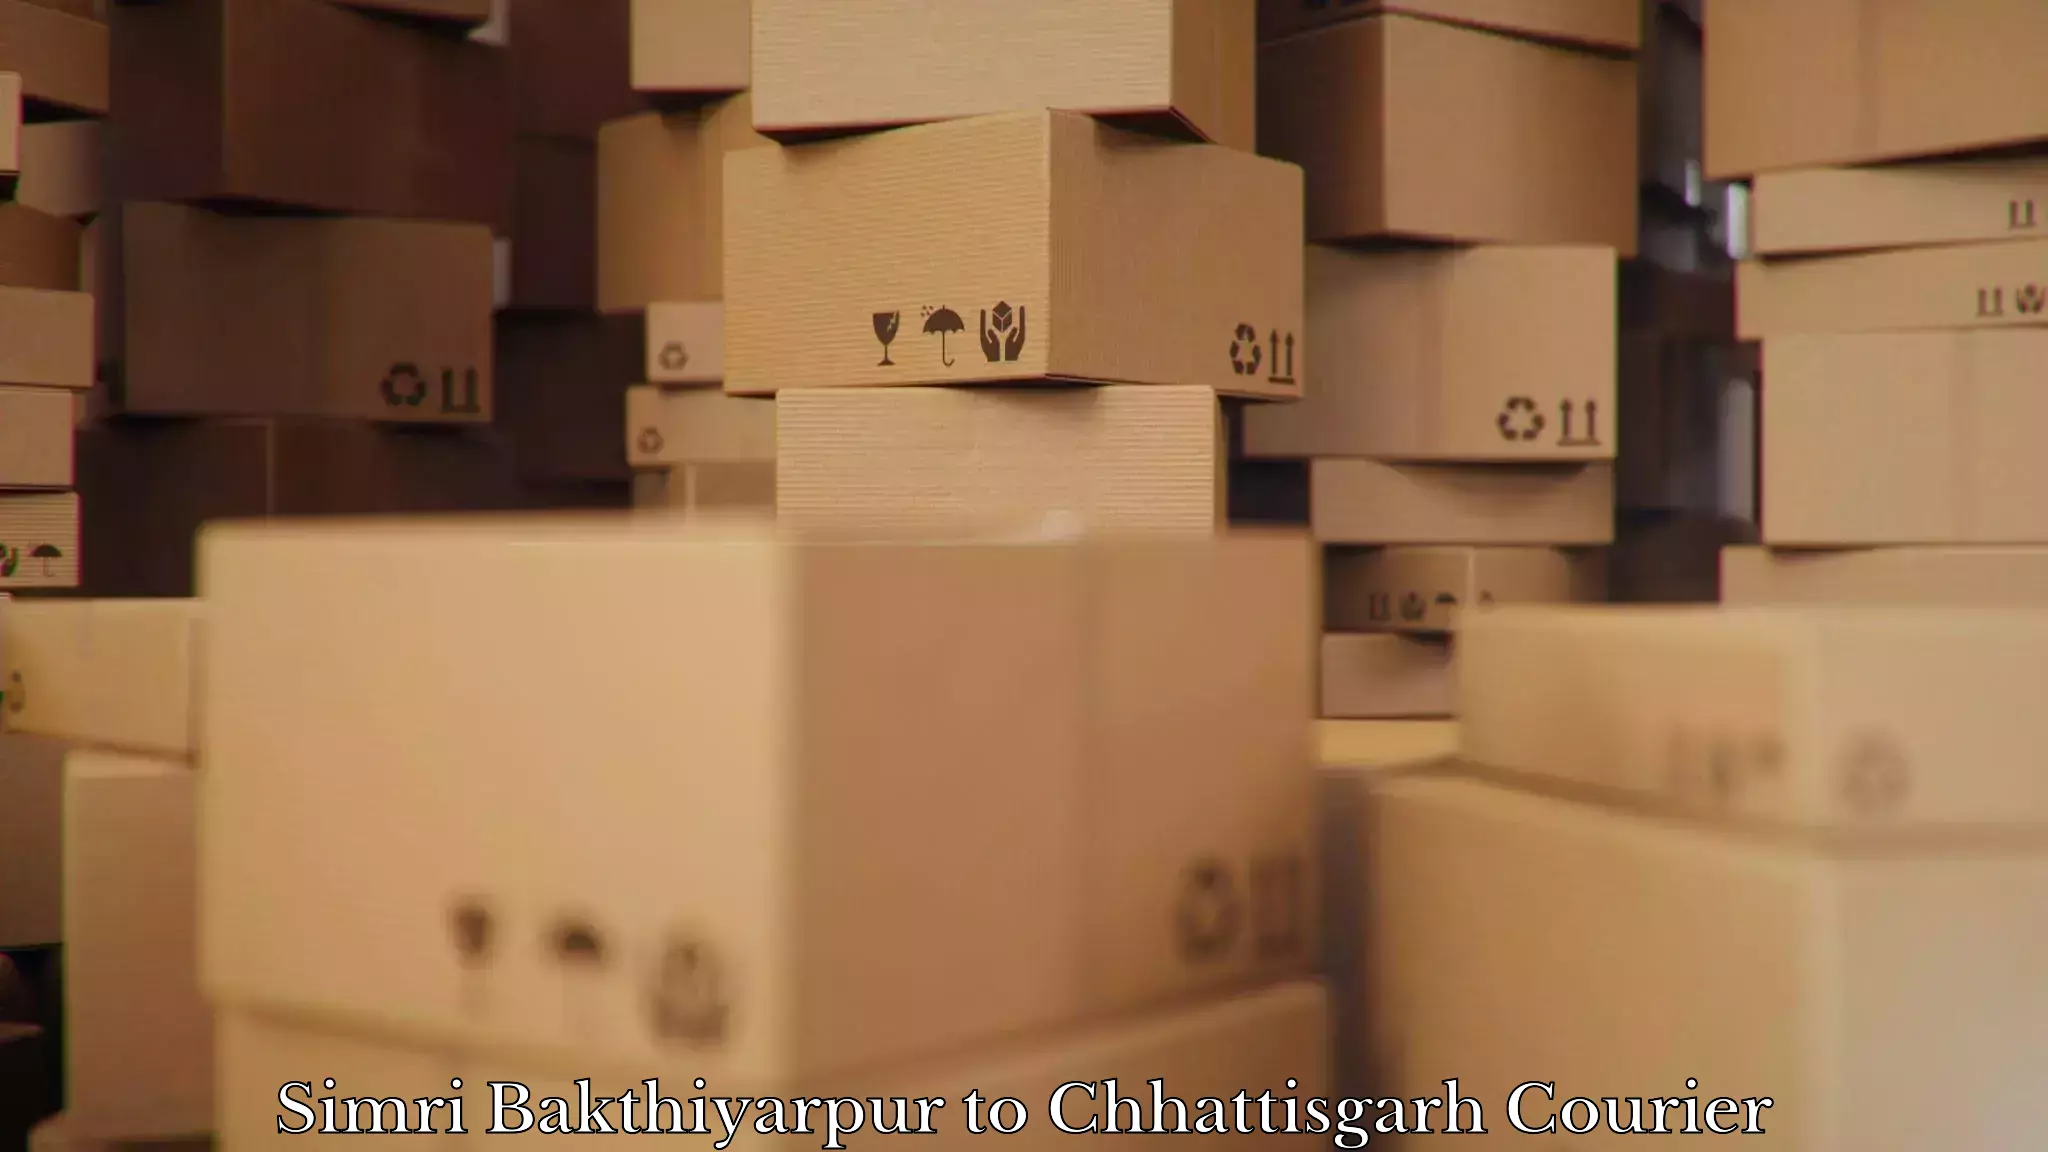 Expert goods movers Simri Bakthiyarpur to Bijapur Chhattisgarh